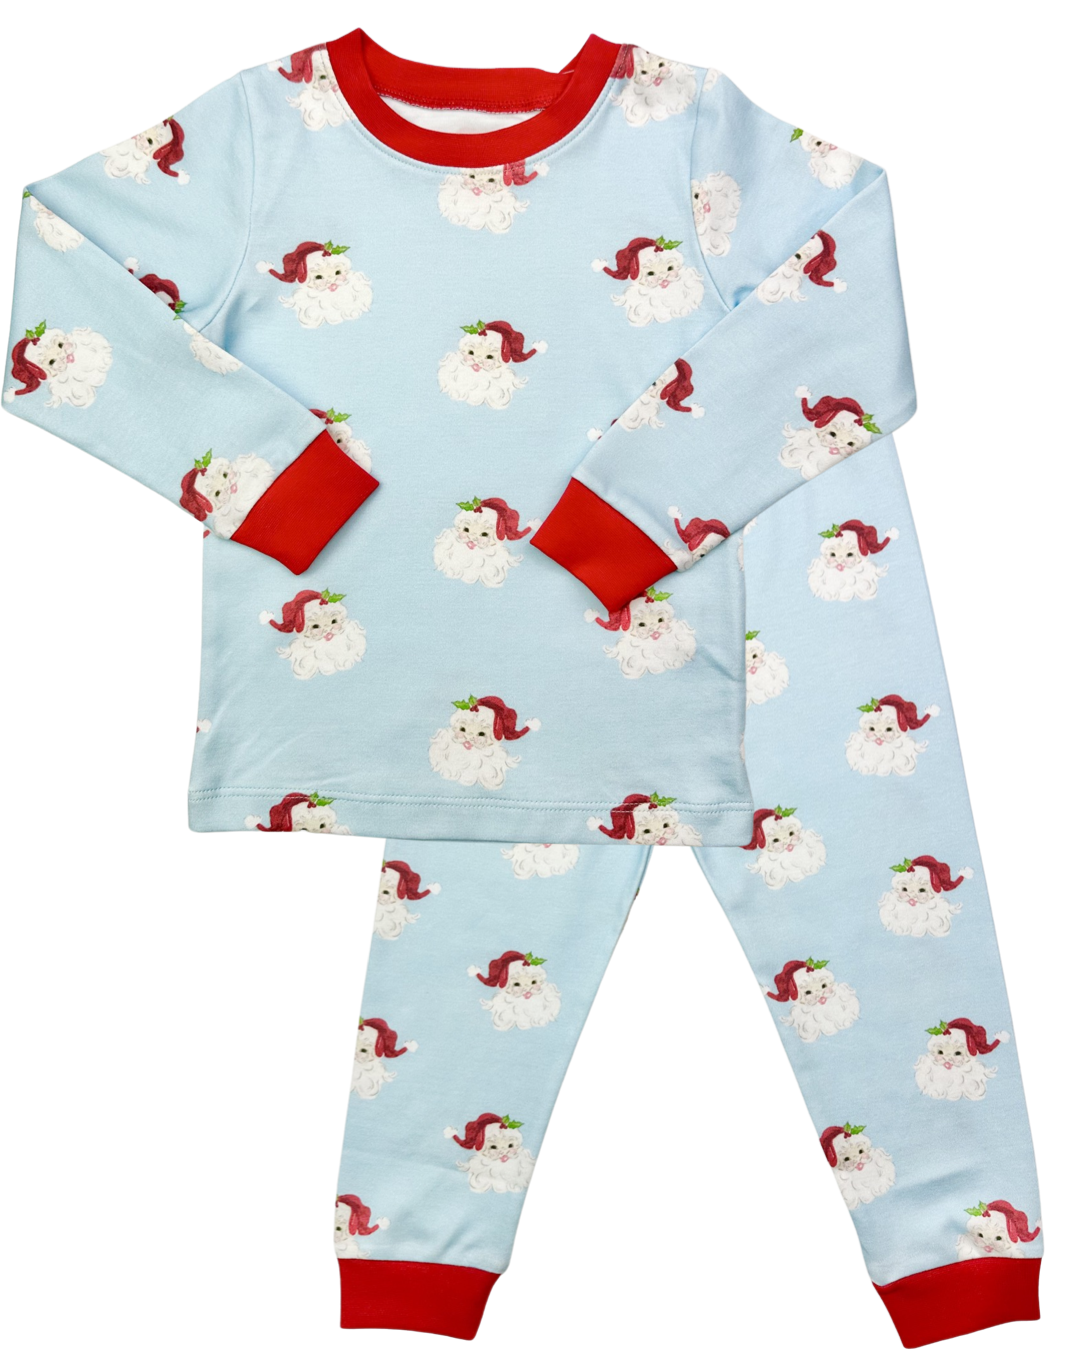 Two Piece Boy Jammies - Santa Knit  (Size 6)